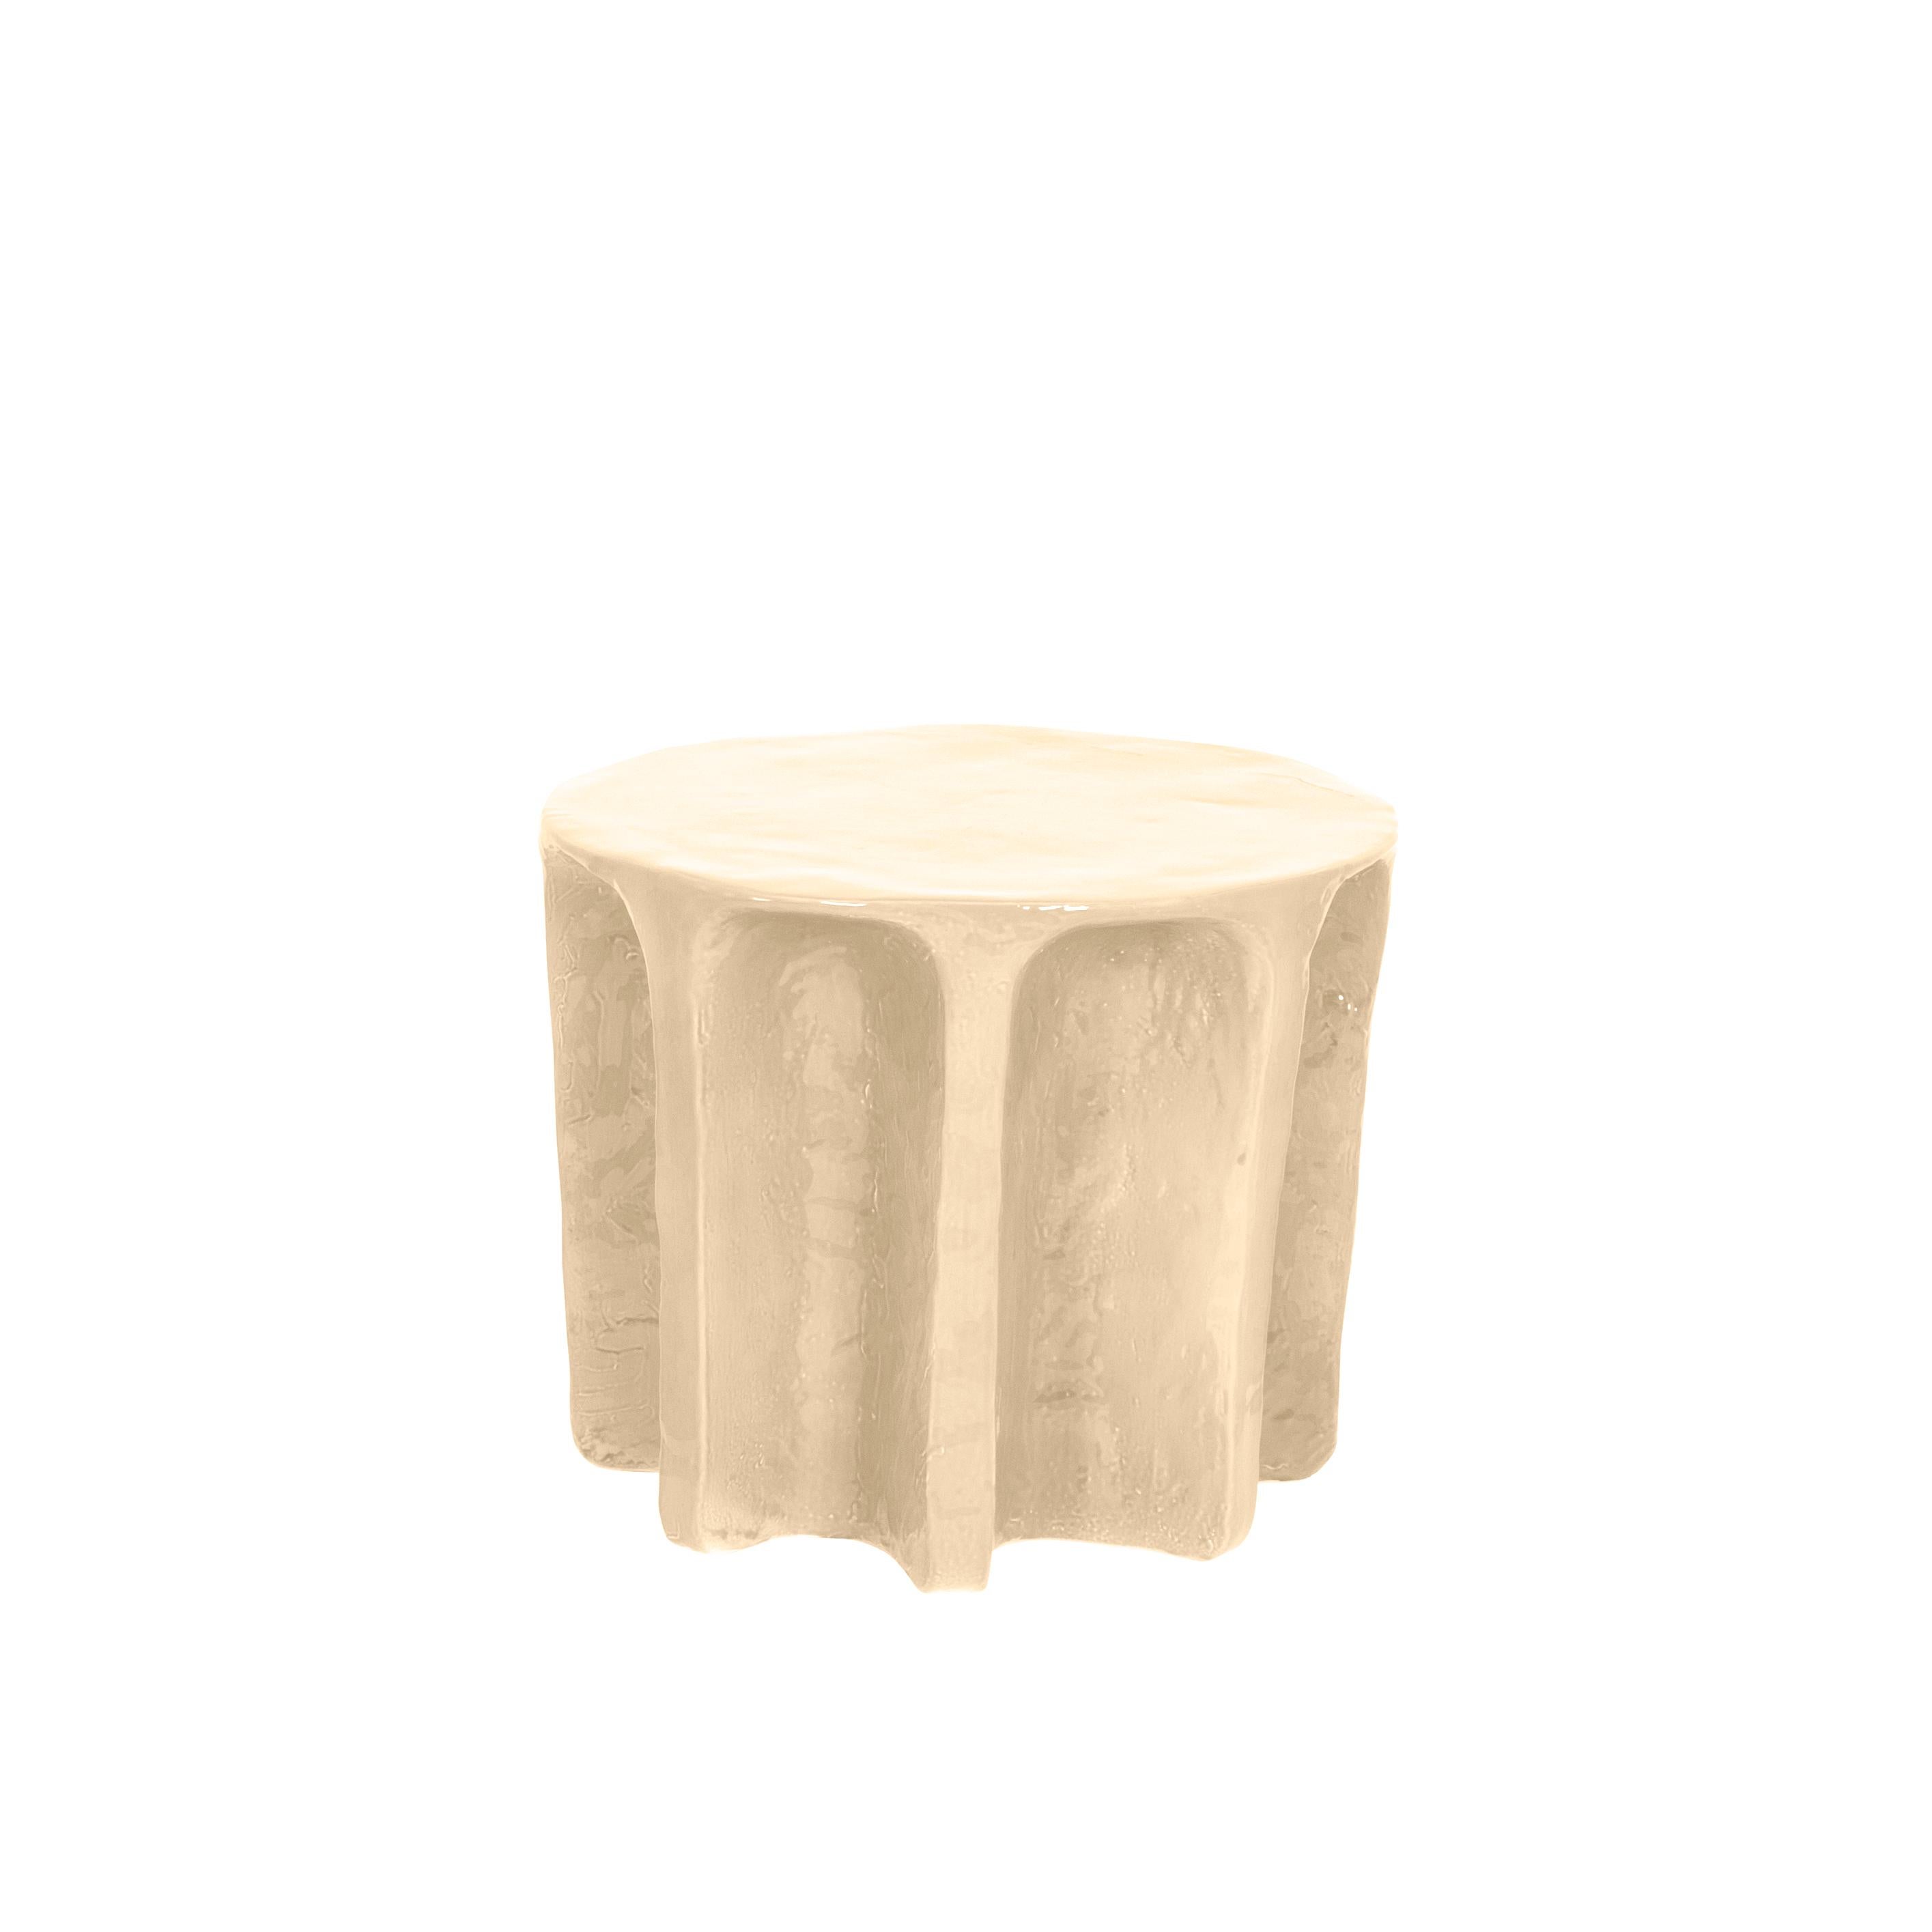 Table basse ronde en sable Chouchou par Pulpo
Dimensions : D55 x H45 cm
Matériaux : Céramique

Également disponible en différentes couleurs.

Chouchou porte les contours d'une colonne antique - ce qui, connaissant le designer Lorenzo